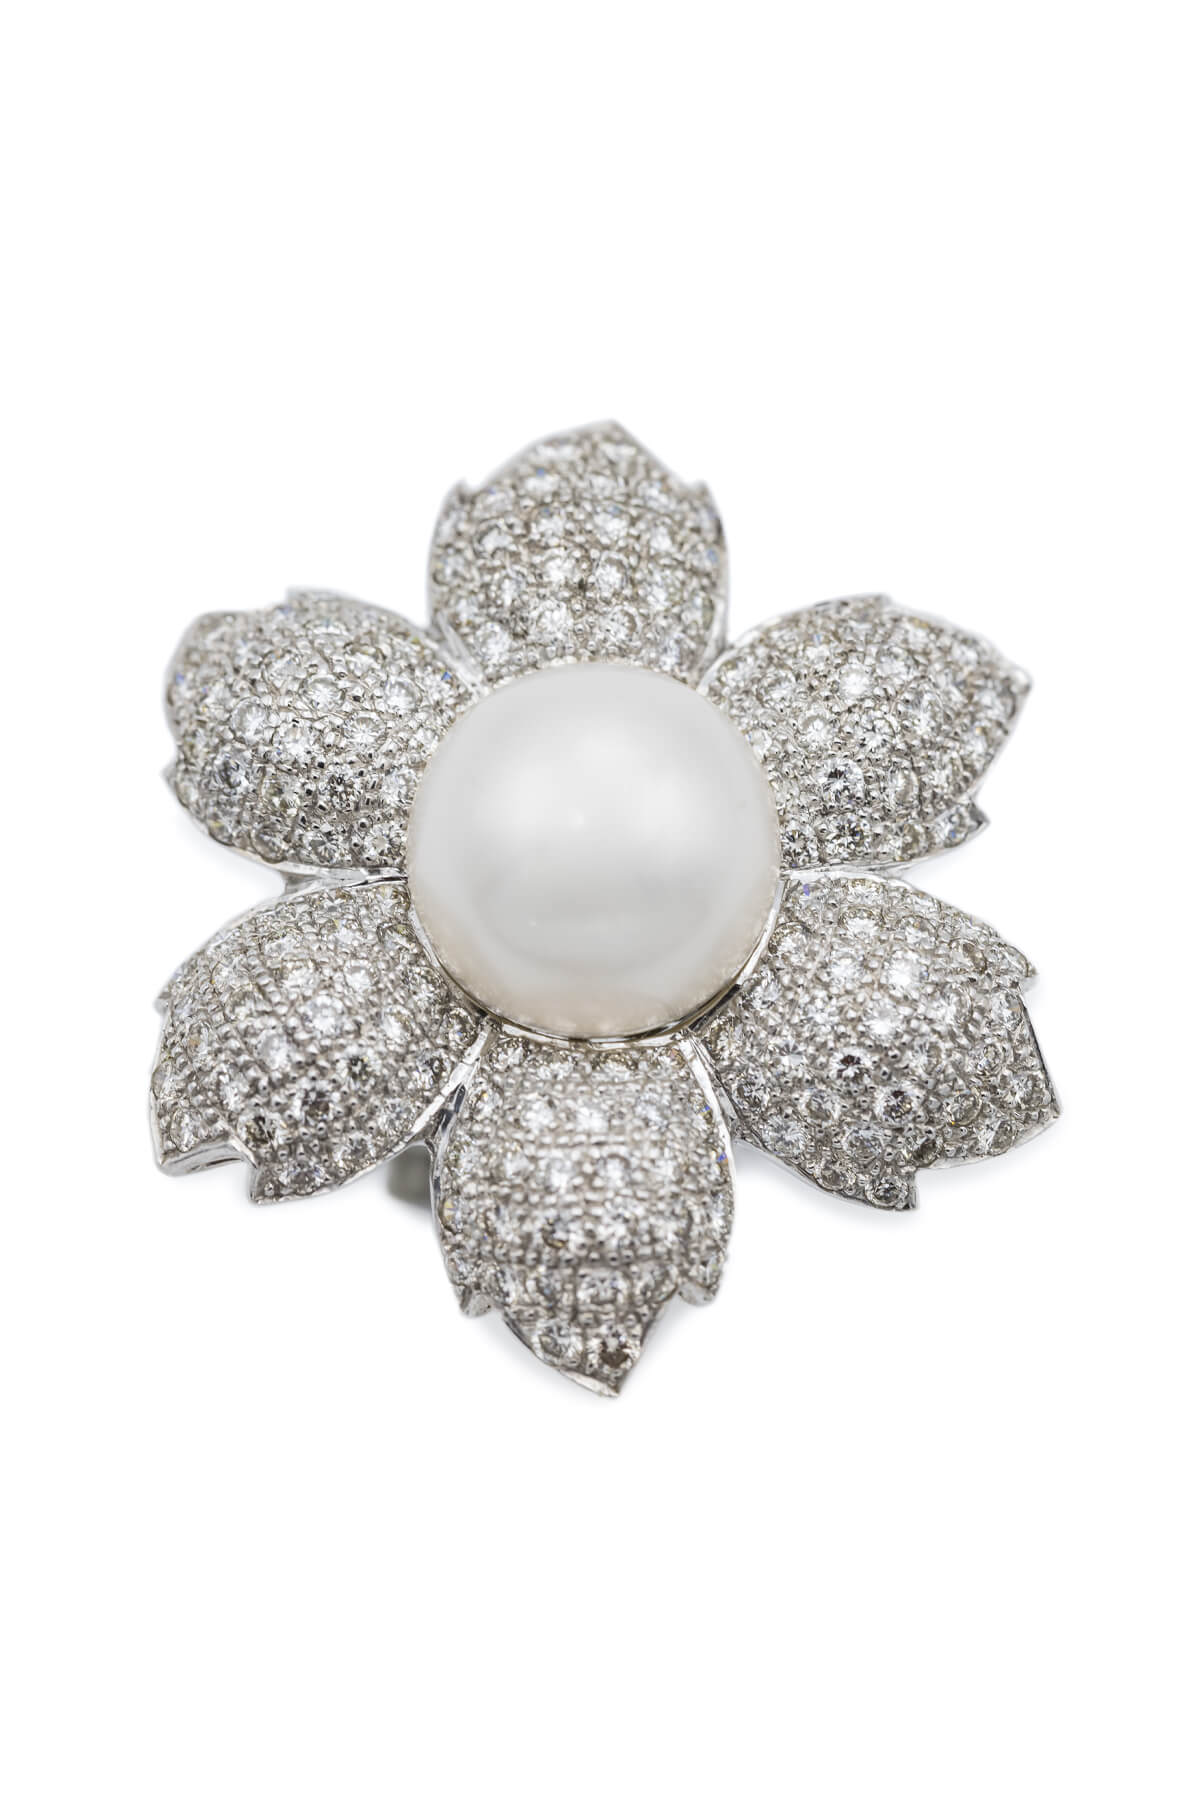 White Pearl & Diamond Flower Ring